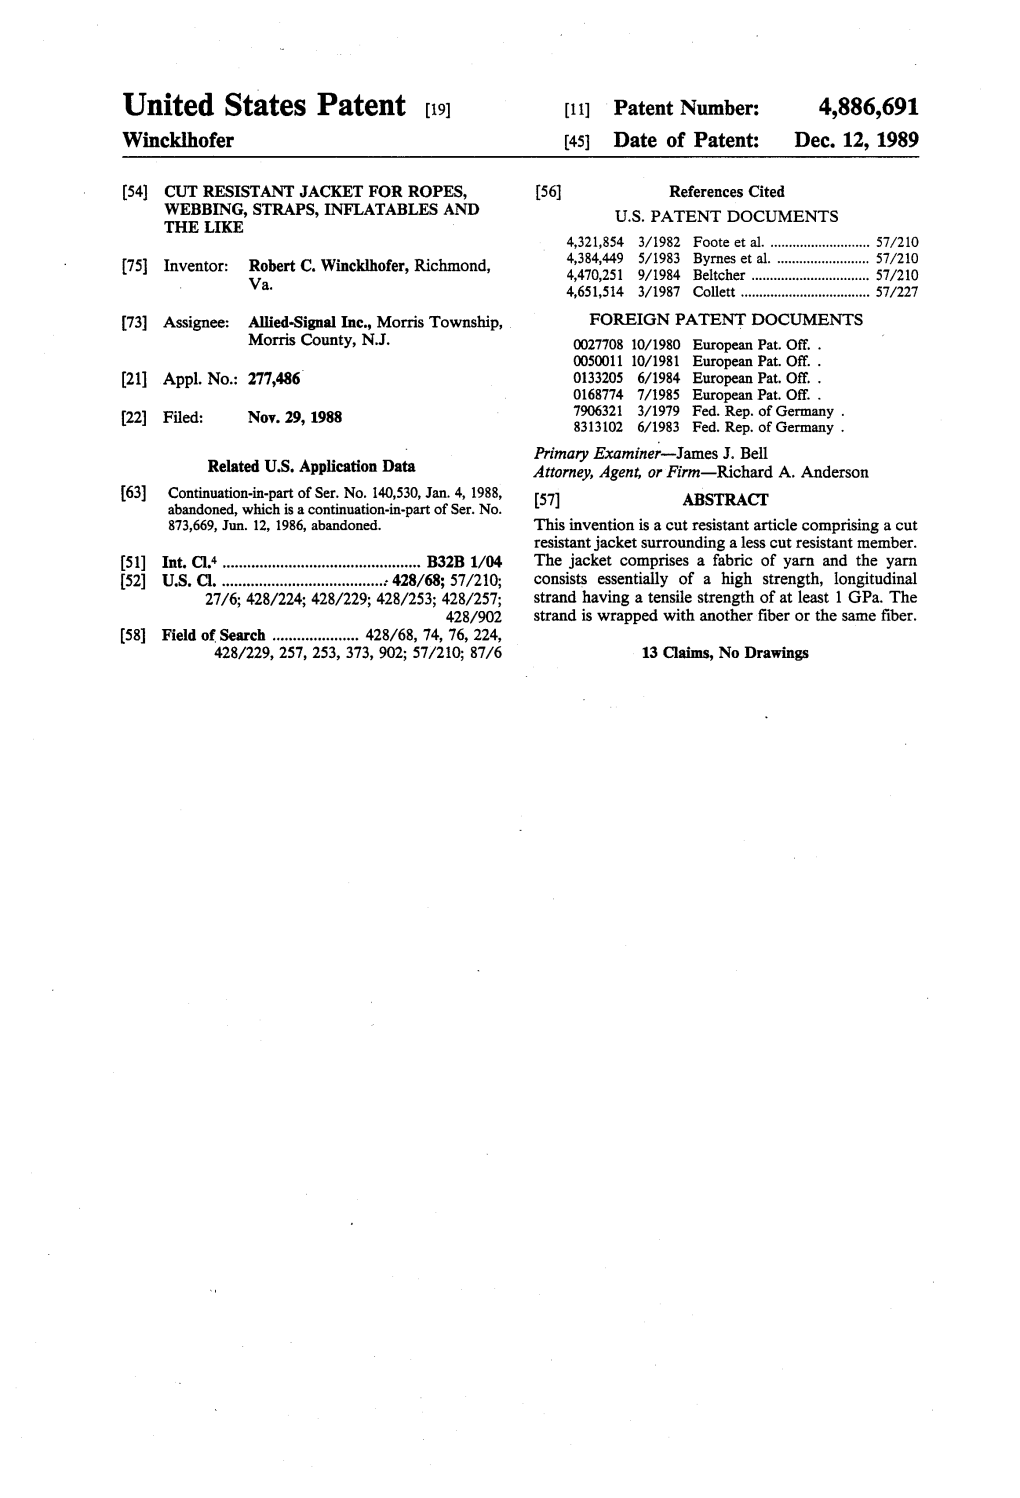 United States Patent (19) 11 Patent Number: 4,886,691 Winckhofer (45) Date of Patent: Dec